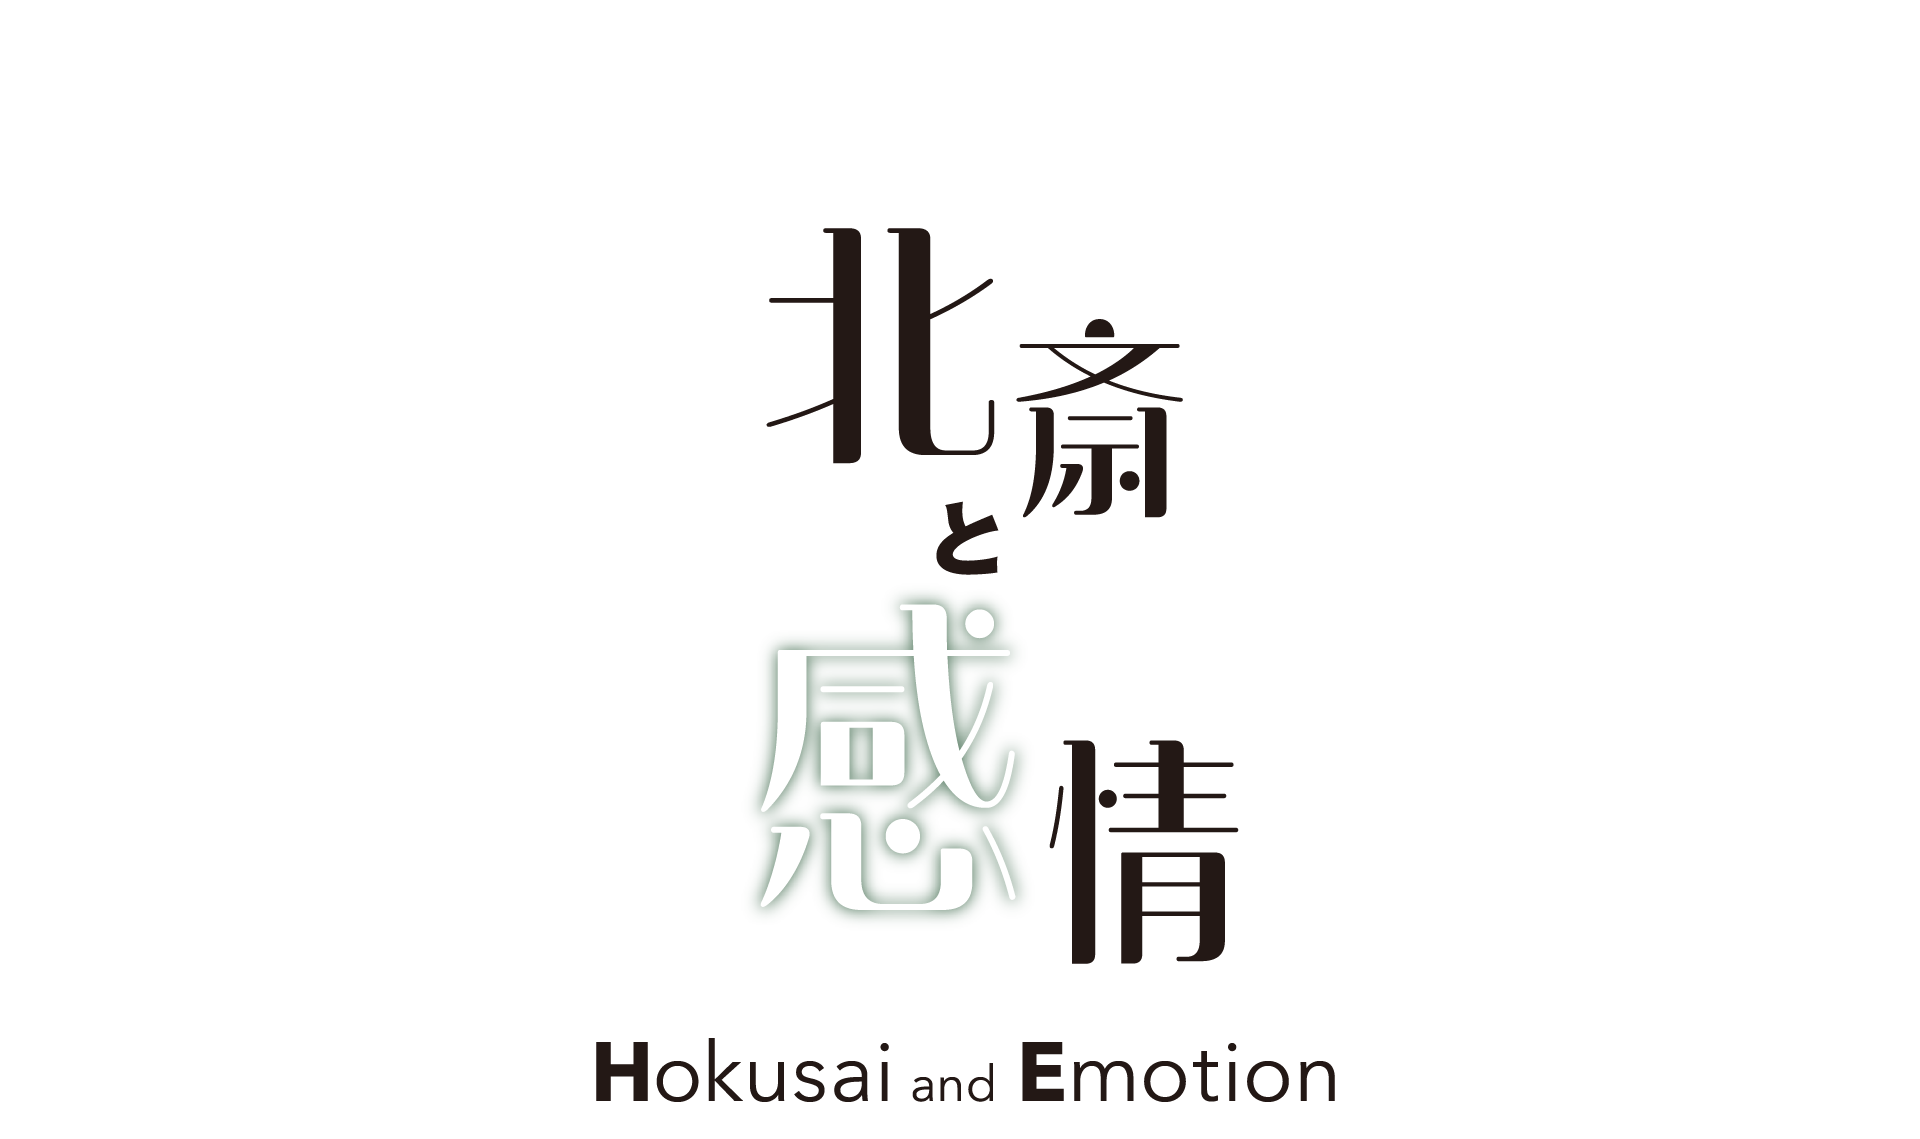 北斎と感情 Hokusai and Emotion